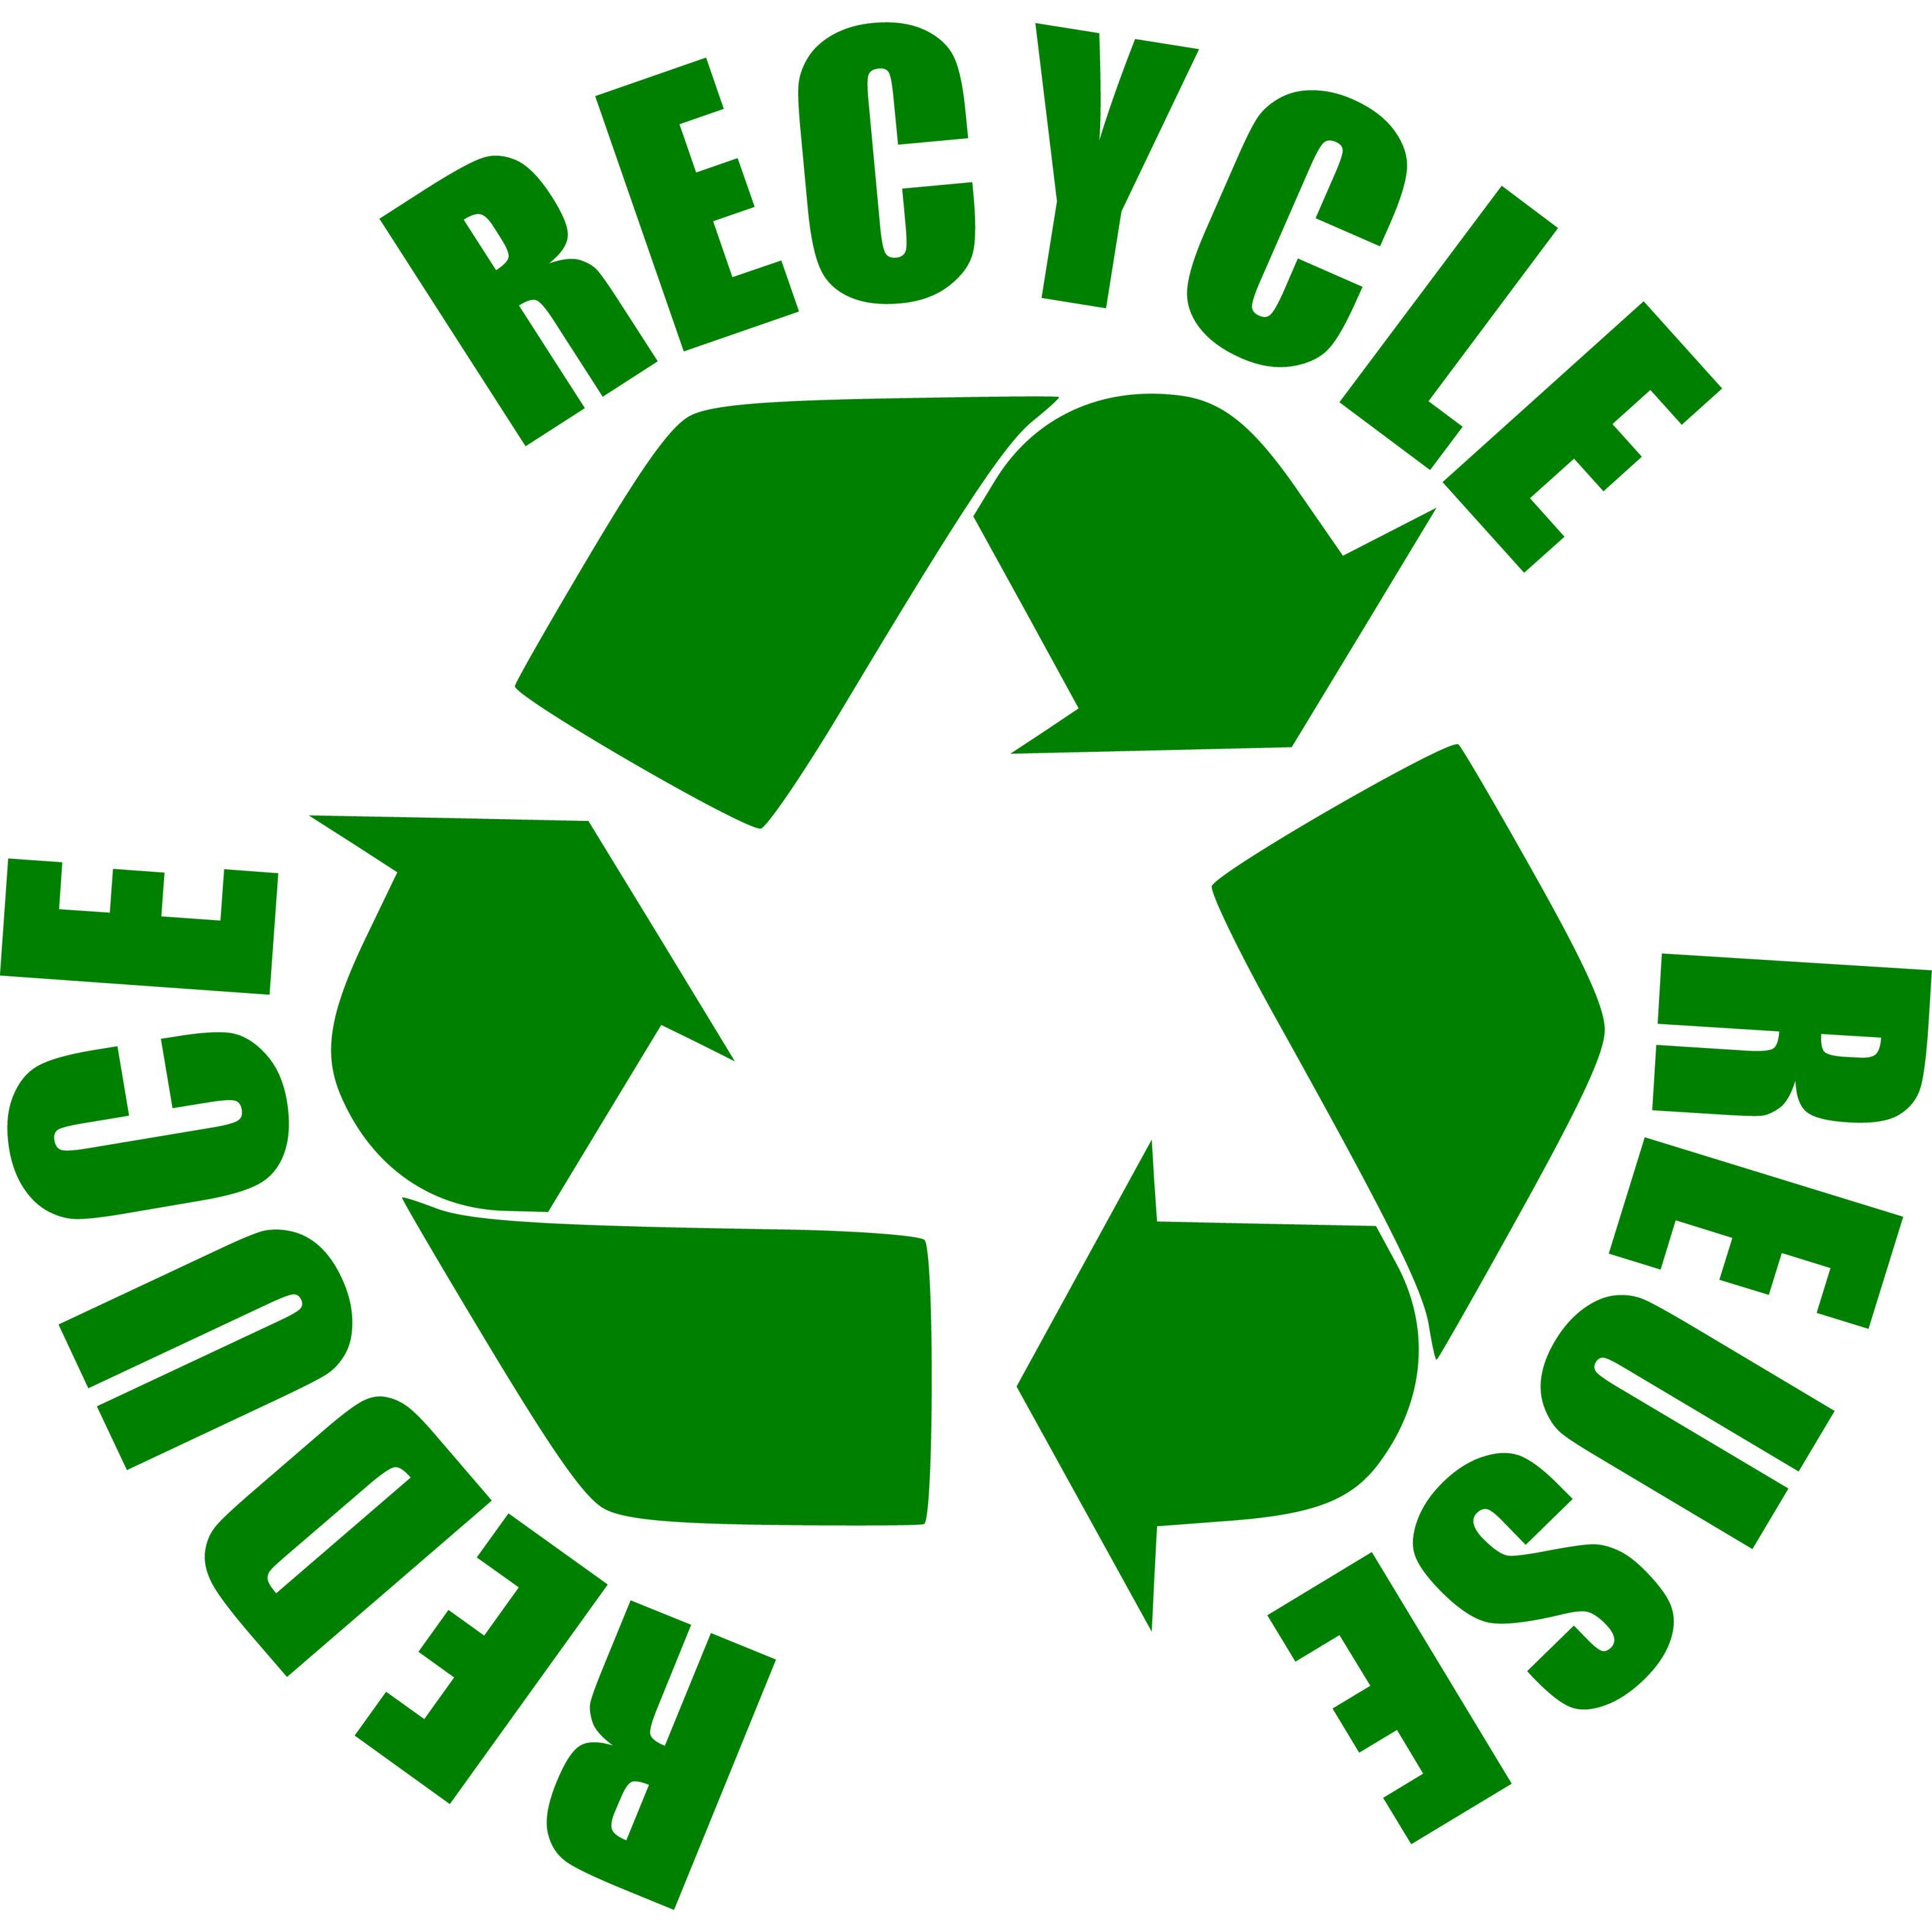 Reduce Logo - Reduce Reuse Recycle Logo N16 free image